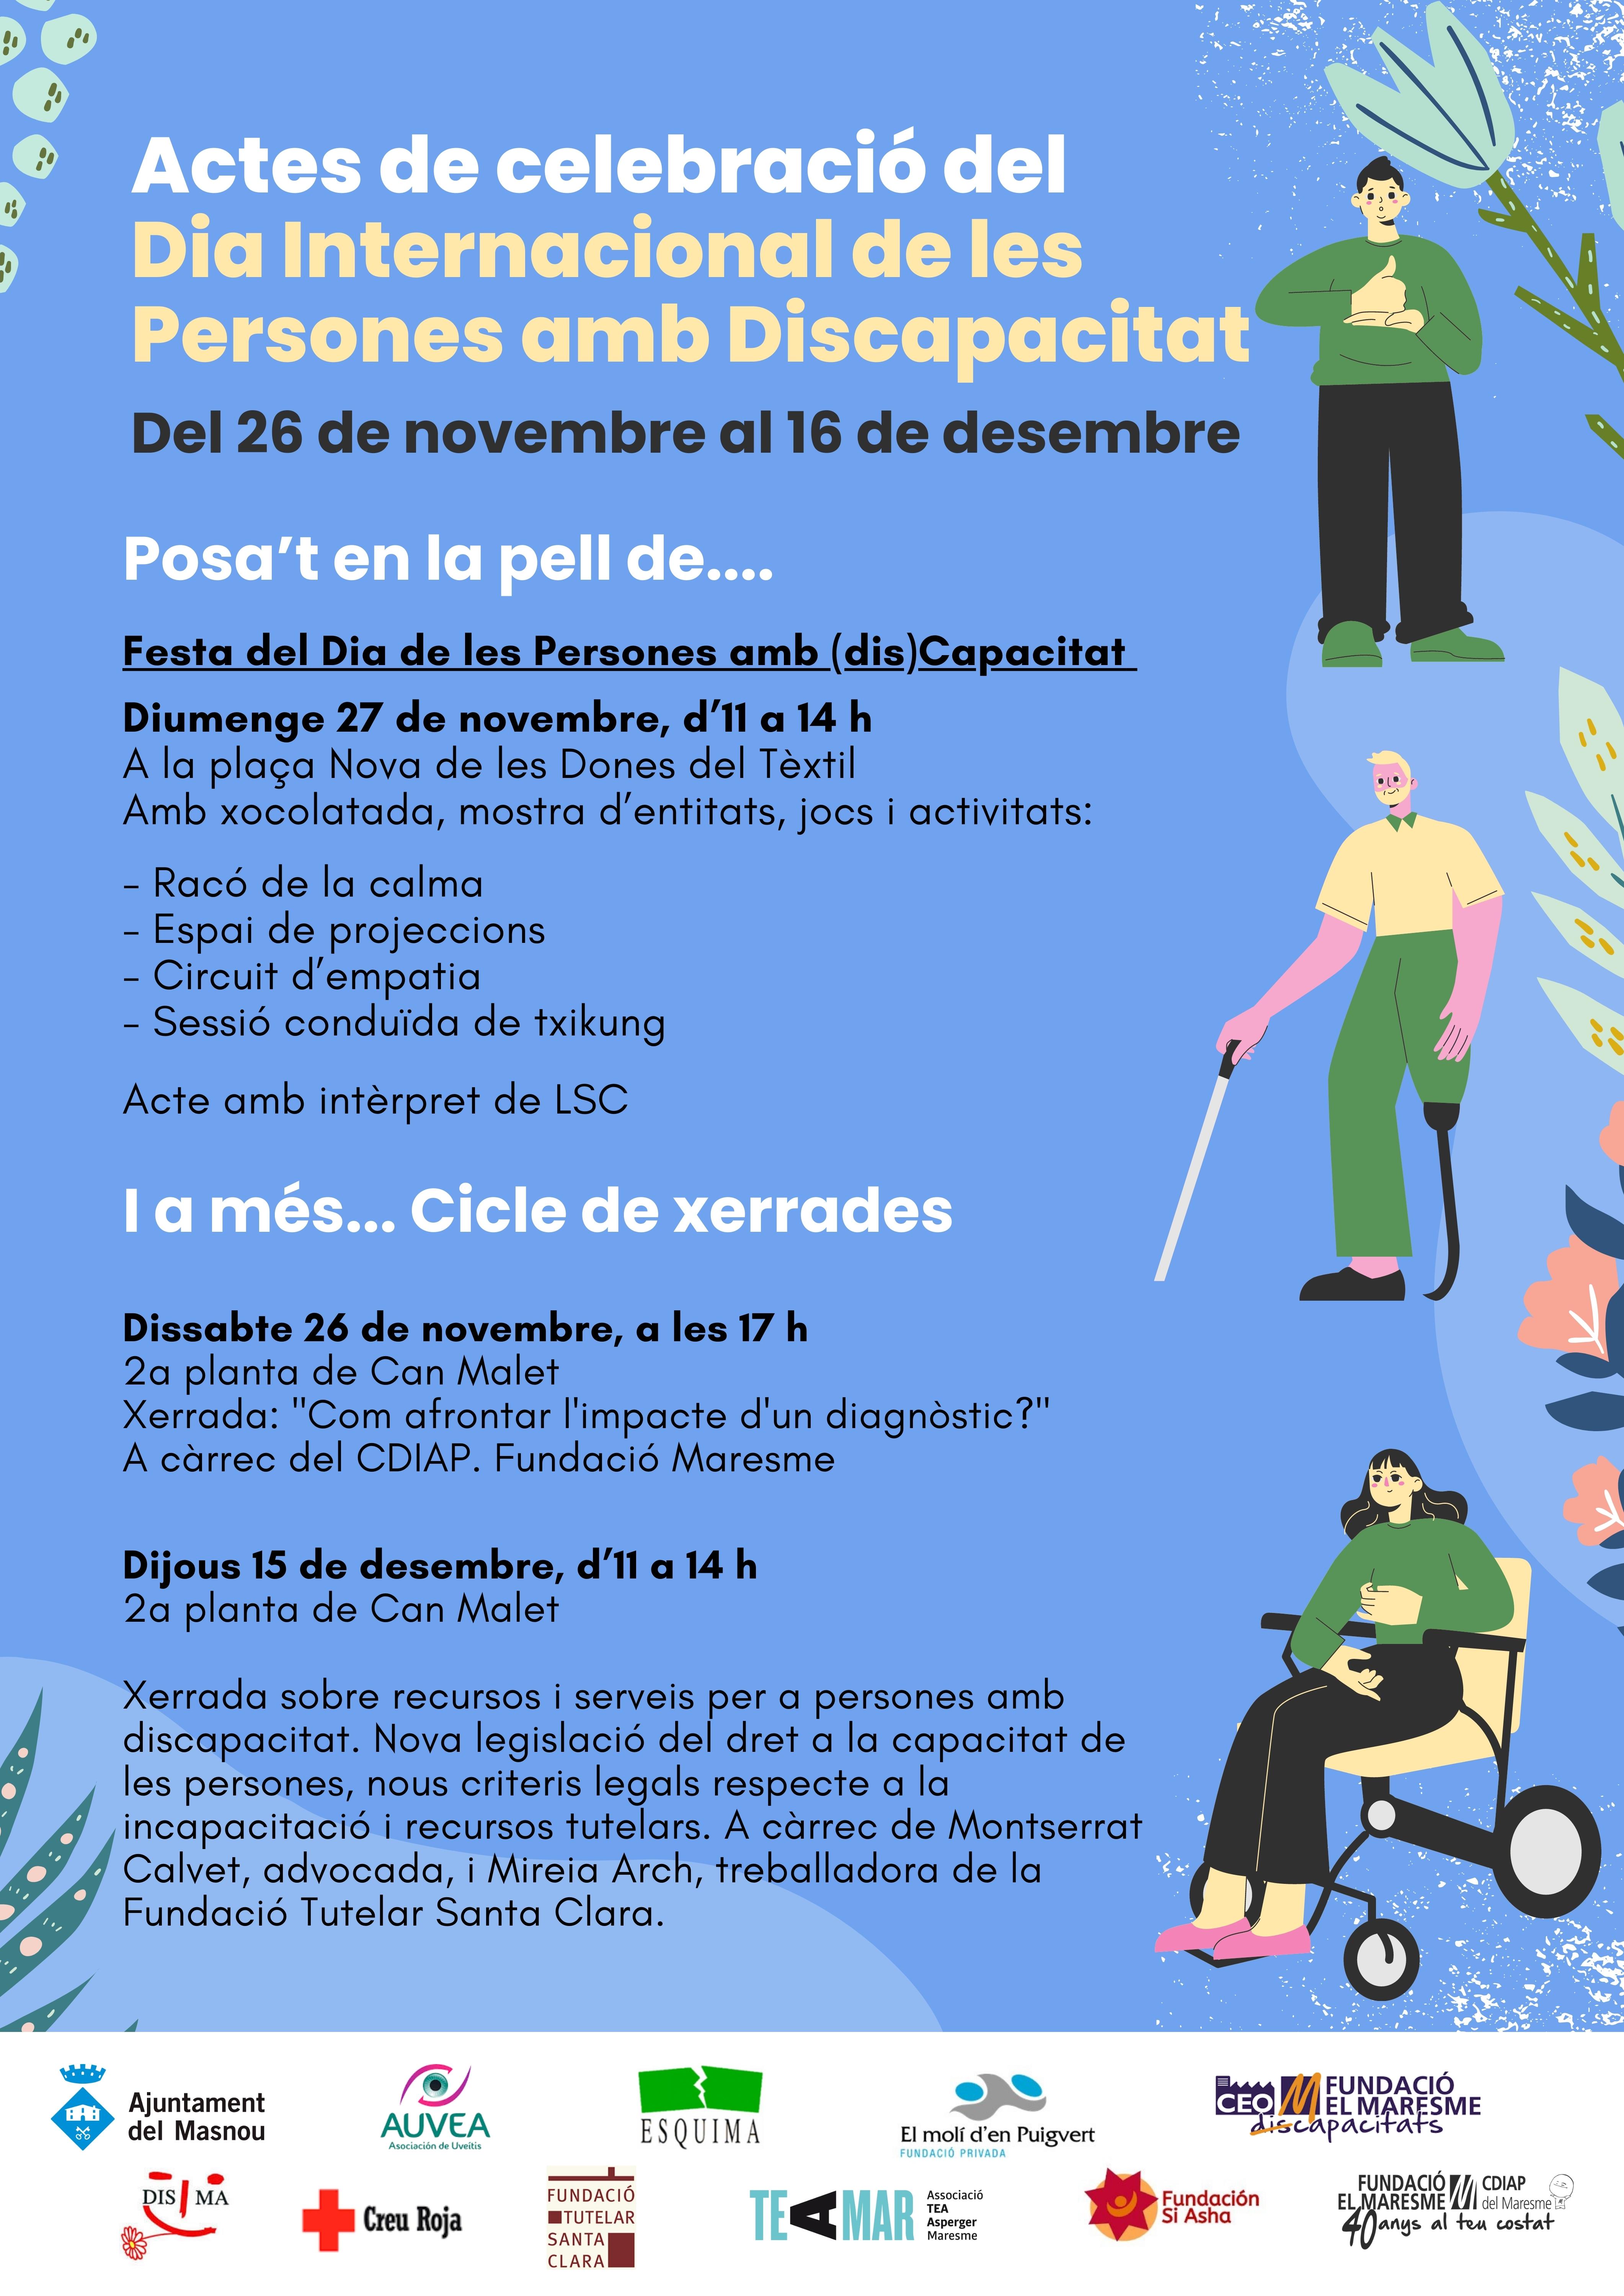 Actes de celebració del Dia Internacional de les Persones amb Discapacitat